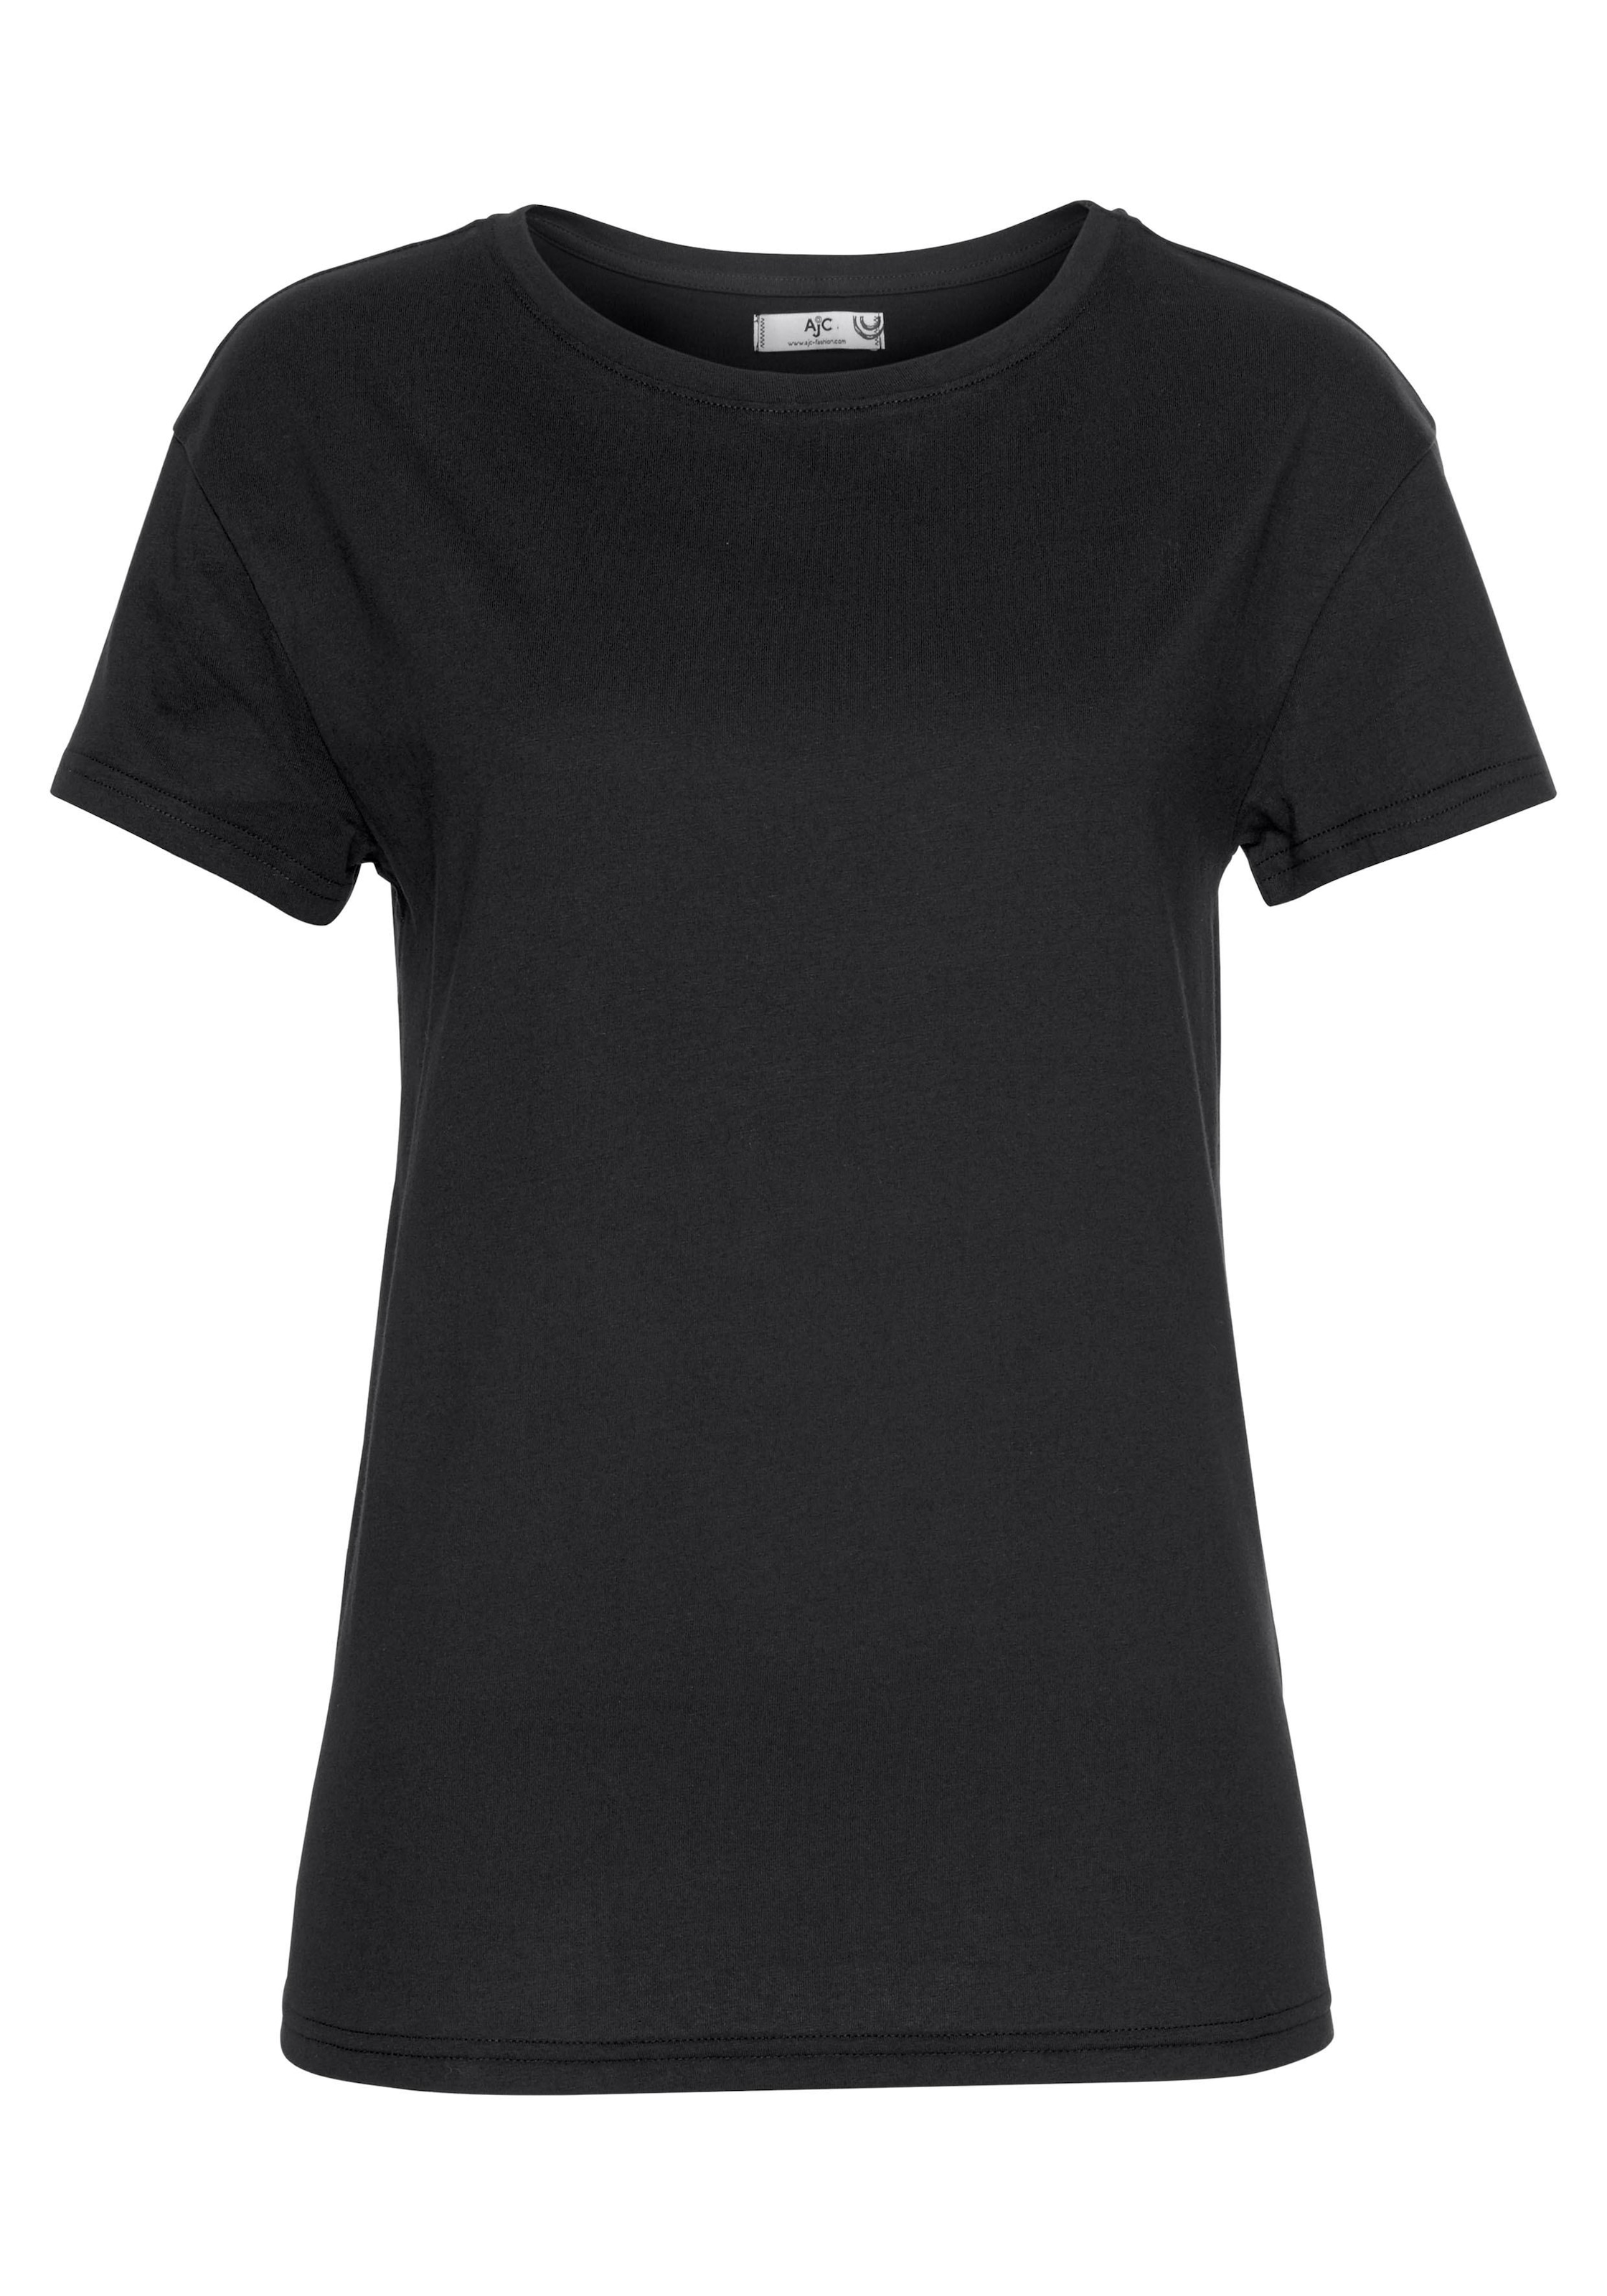 AJC trendigen T-Shirt, KOLLEKTION - NEUE versandkostenfrei im auf Oversized-Look